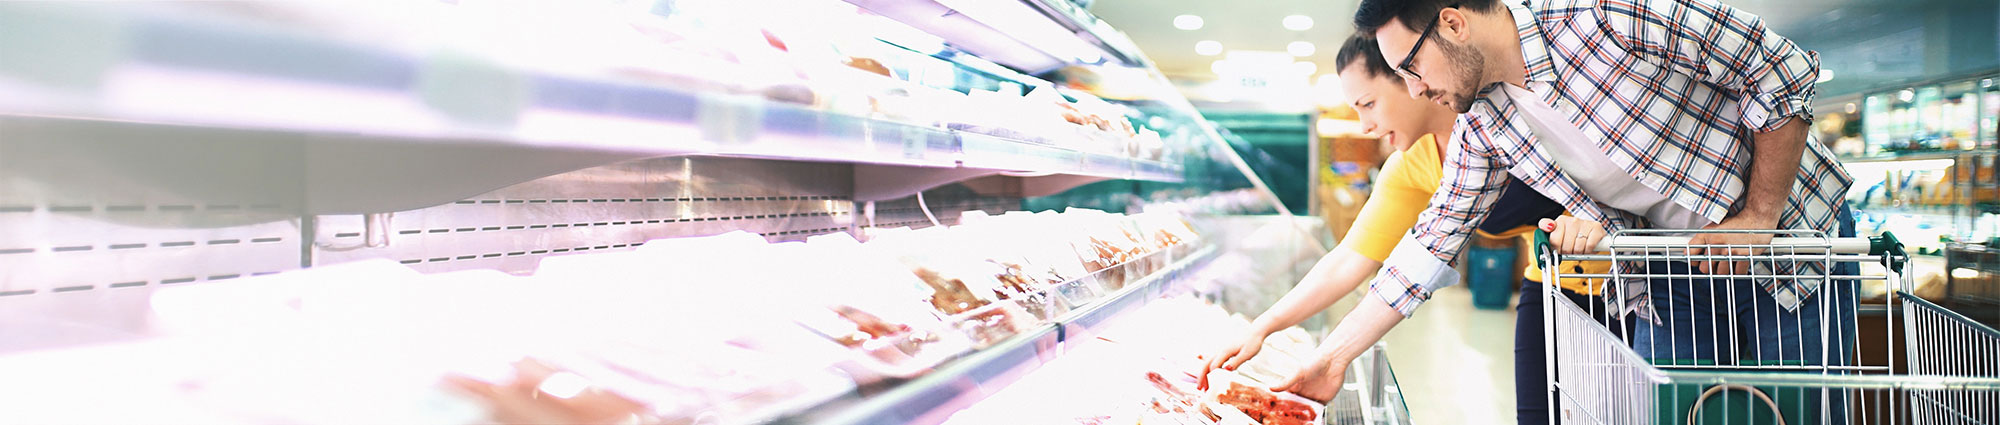 Coppia che sceglie la carne da acquistare in un supermercato